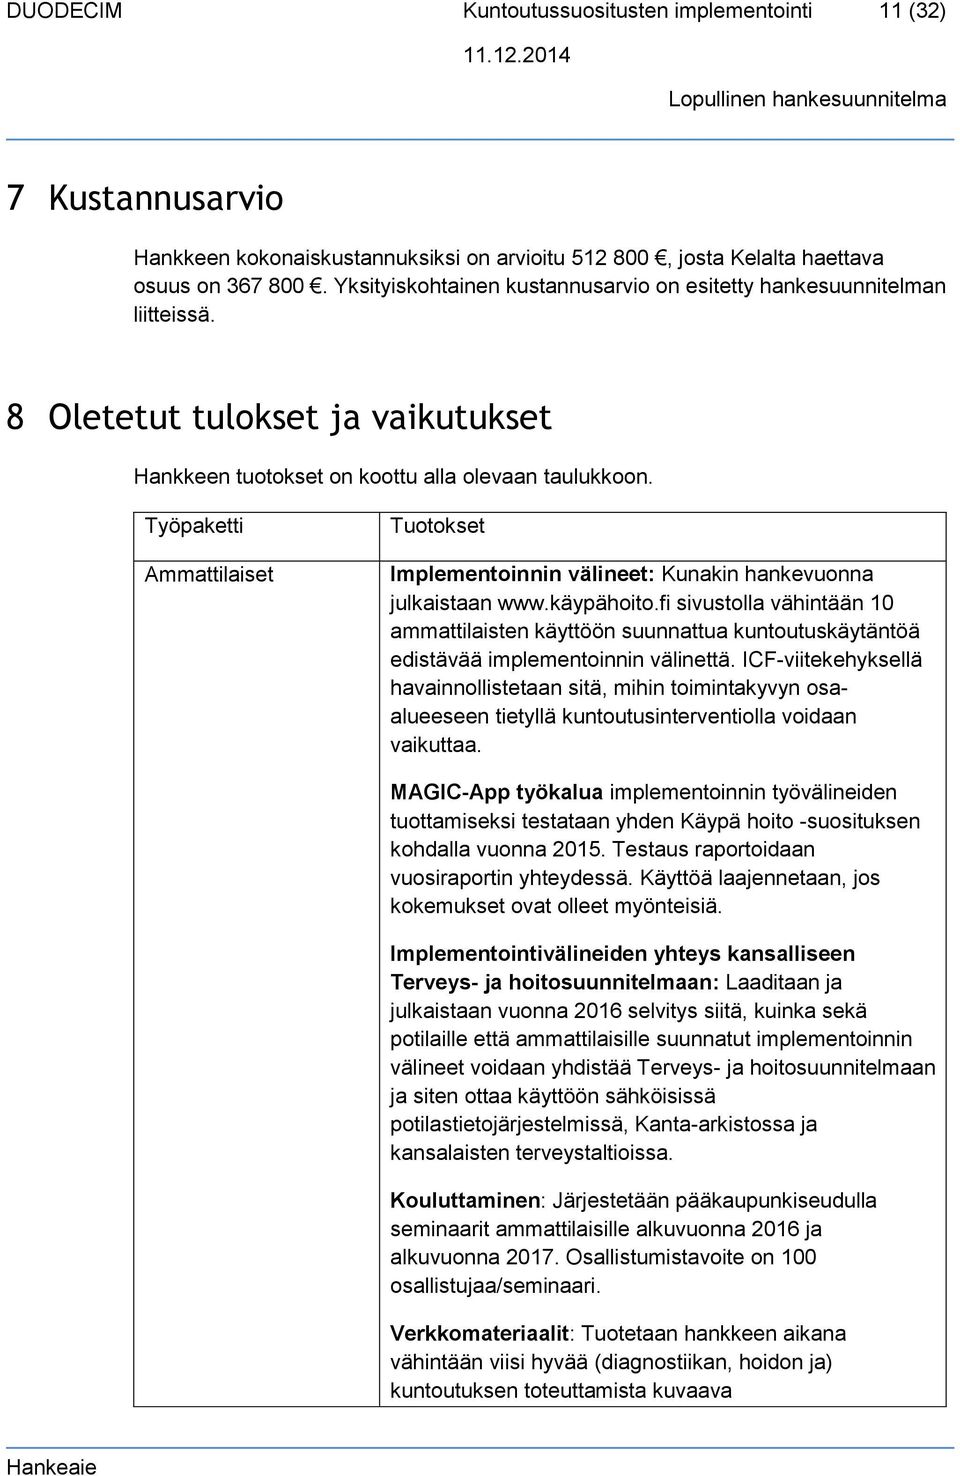 Työpaketti Ammattilaiset Tuotokset Implementoinnin välineet: Kunakin hankevuonna julkaistaan www.käypähoito.